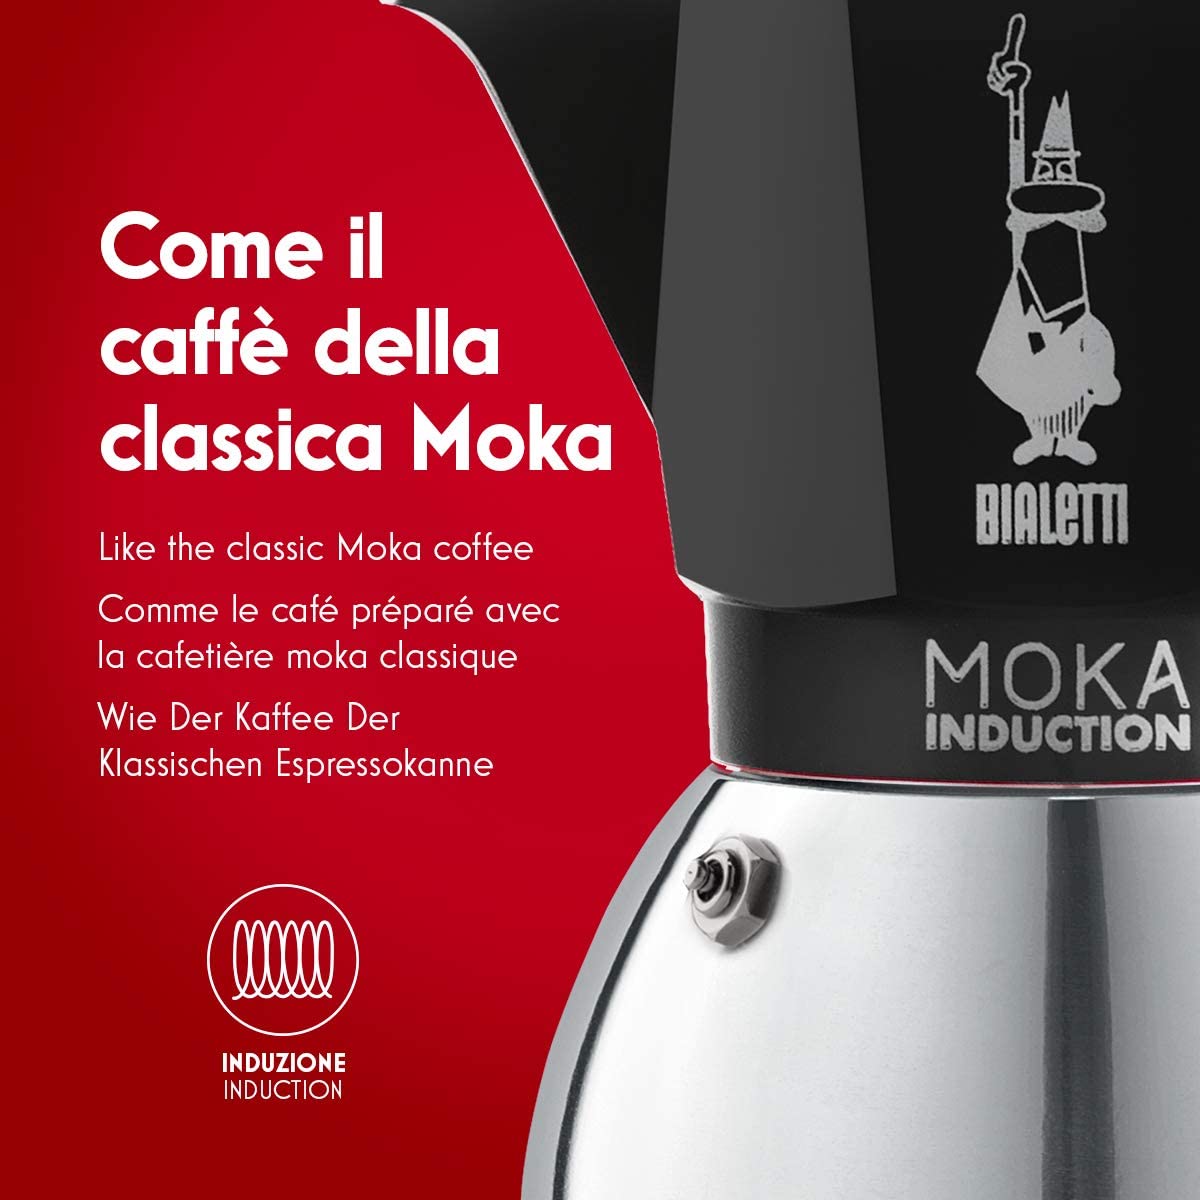 Третье дополнительное изображение для товара Гейзерная кофеварка Bialetti Moka Induction 6932 для индукционных плит (2 порции, 100 мл), черная